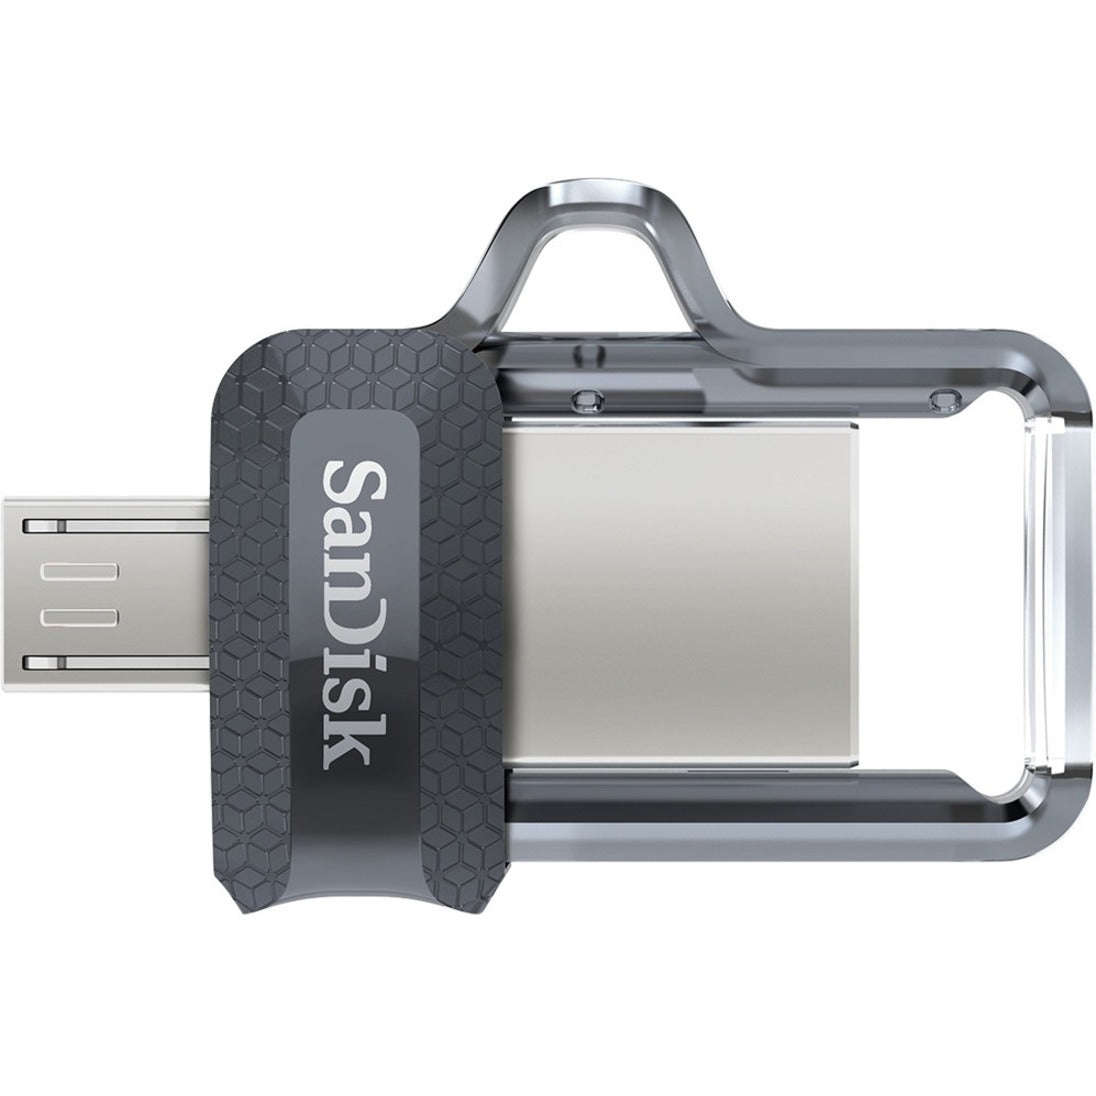 SanDisk SDDD3-032G-A46 Ultra Dual Drive m3.0 - 32GB, USB 3.0 Flash Drive